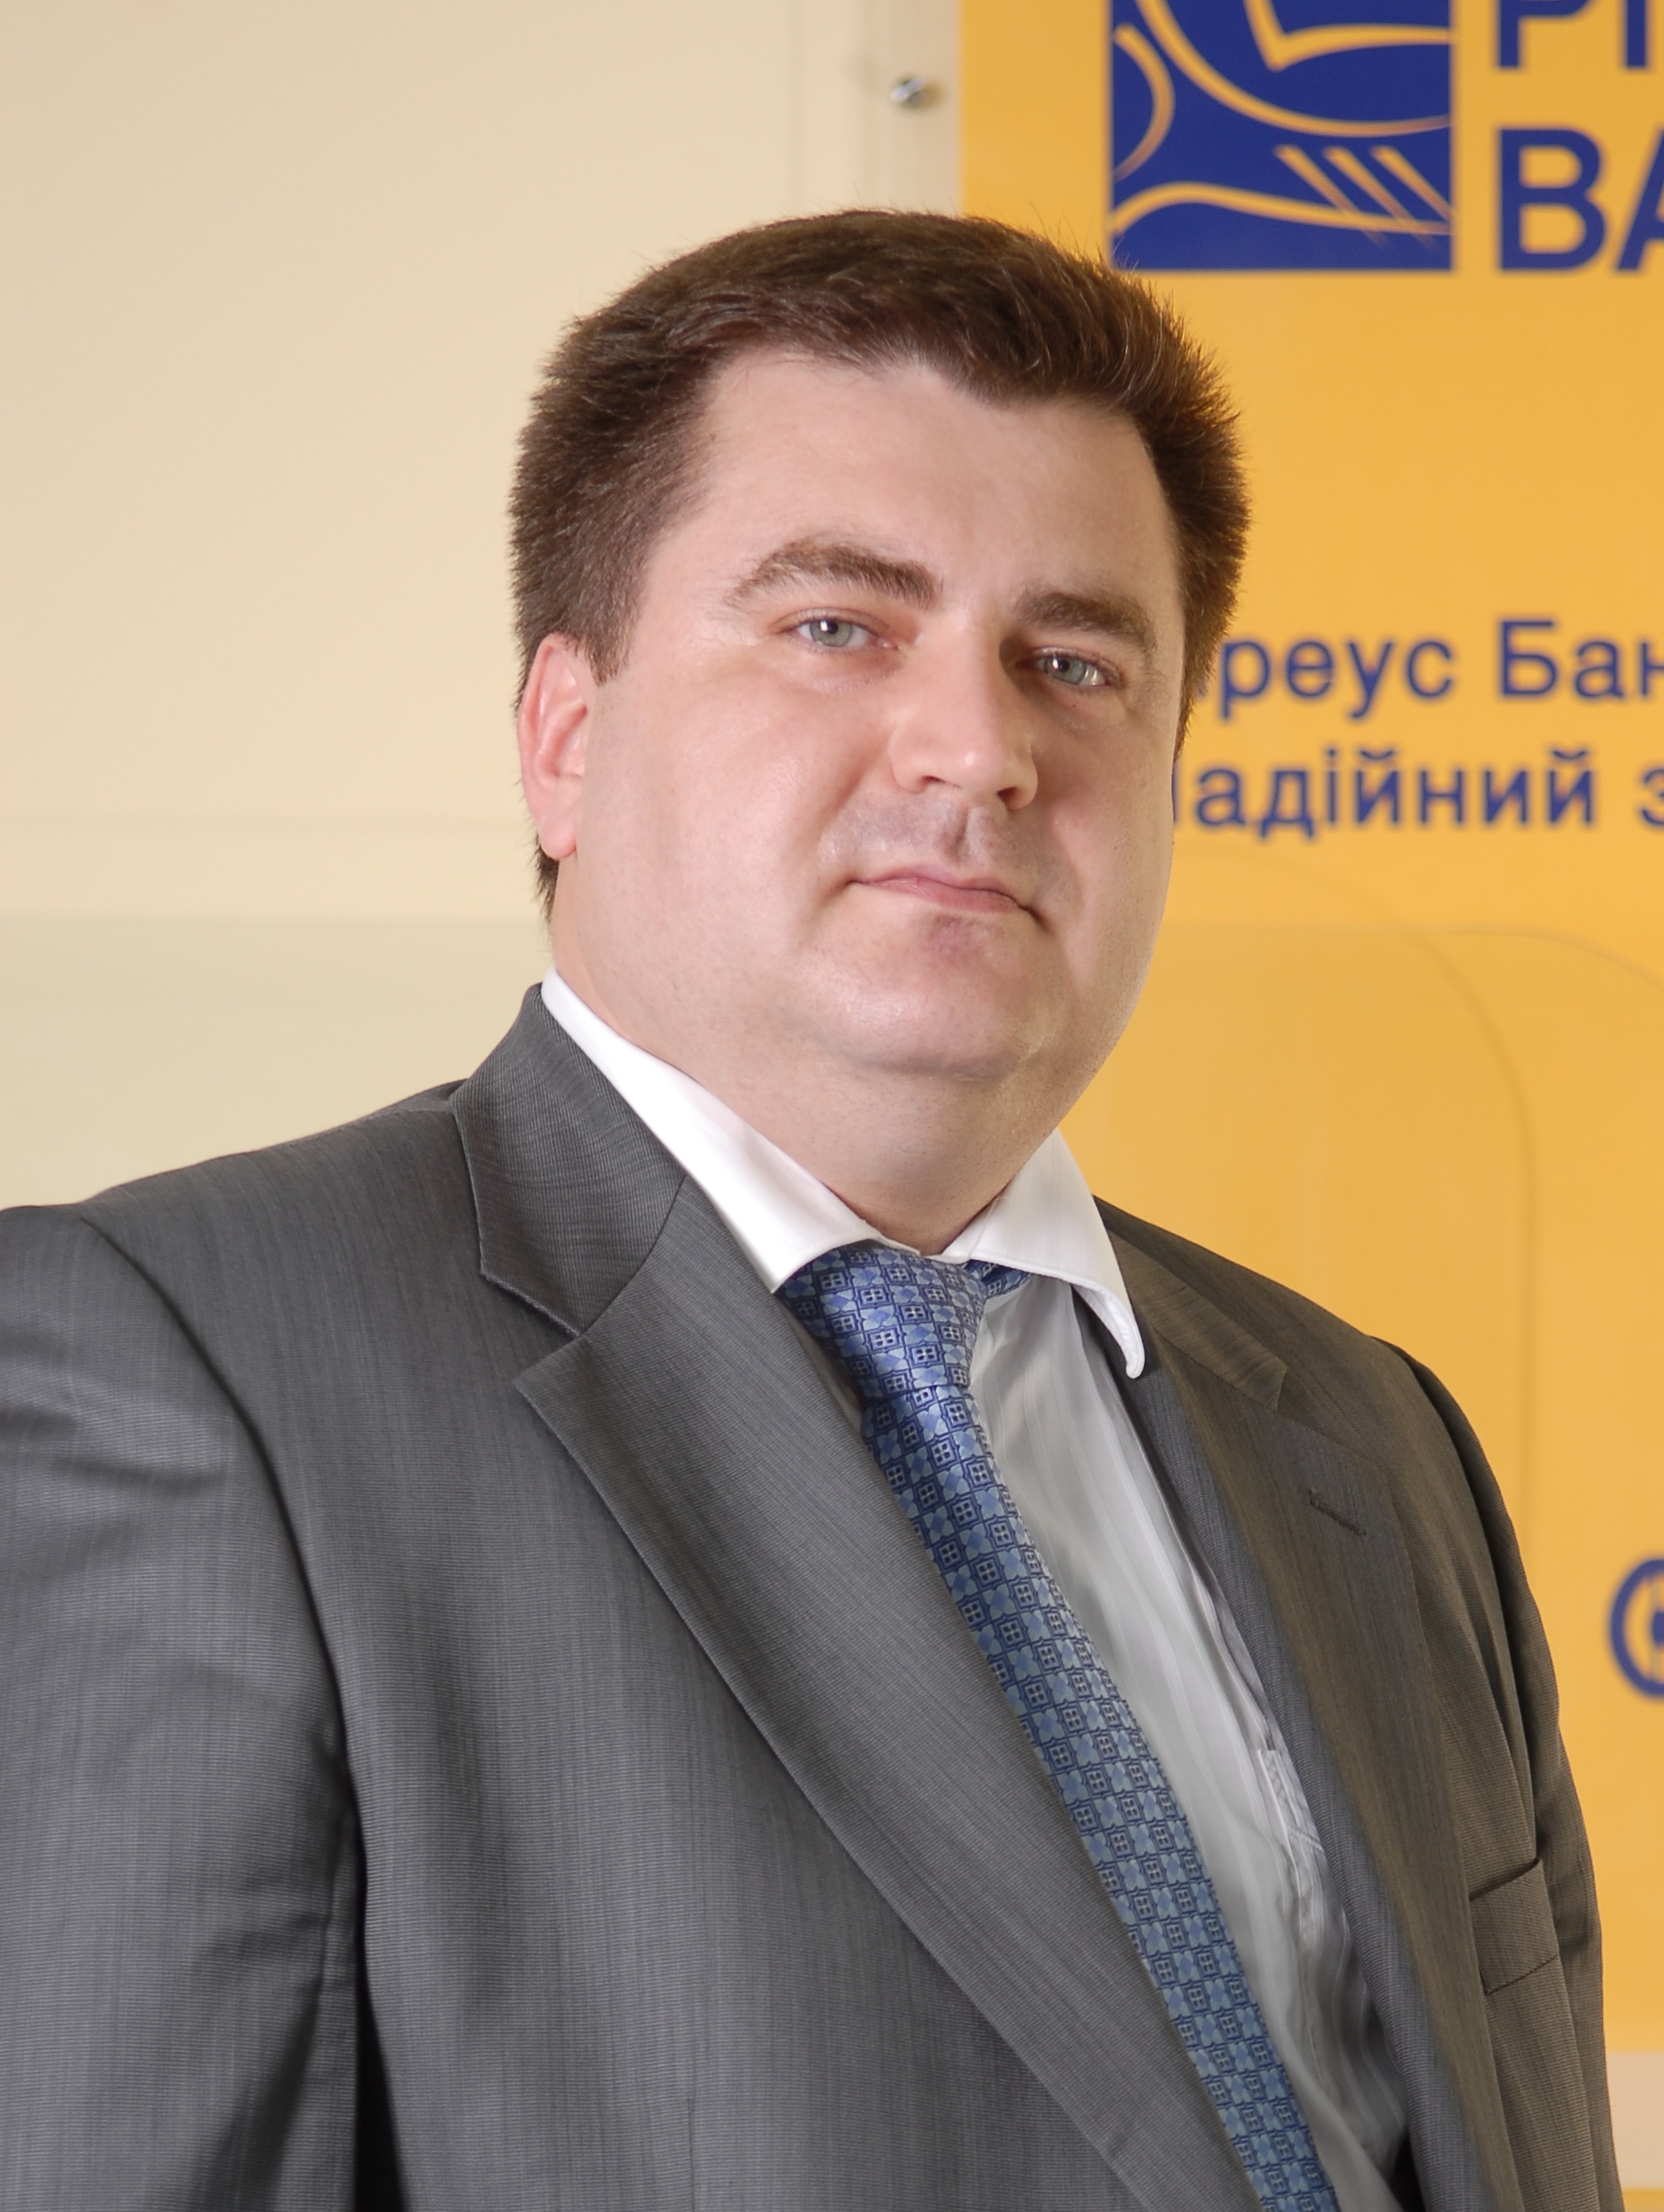 Дмитро Мусієнко, член правління, директор департаменту мережі філій Піреус Банку в Україні: 